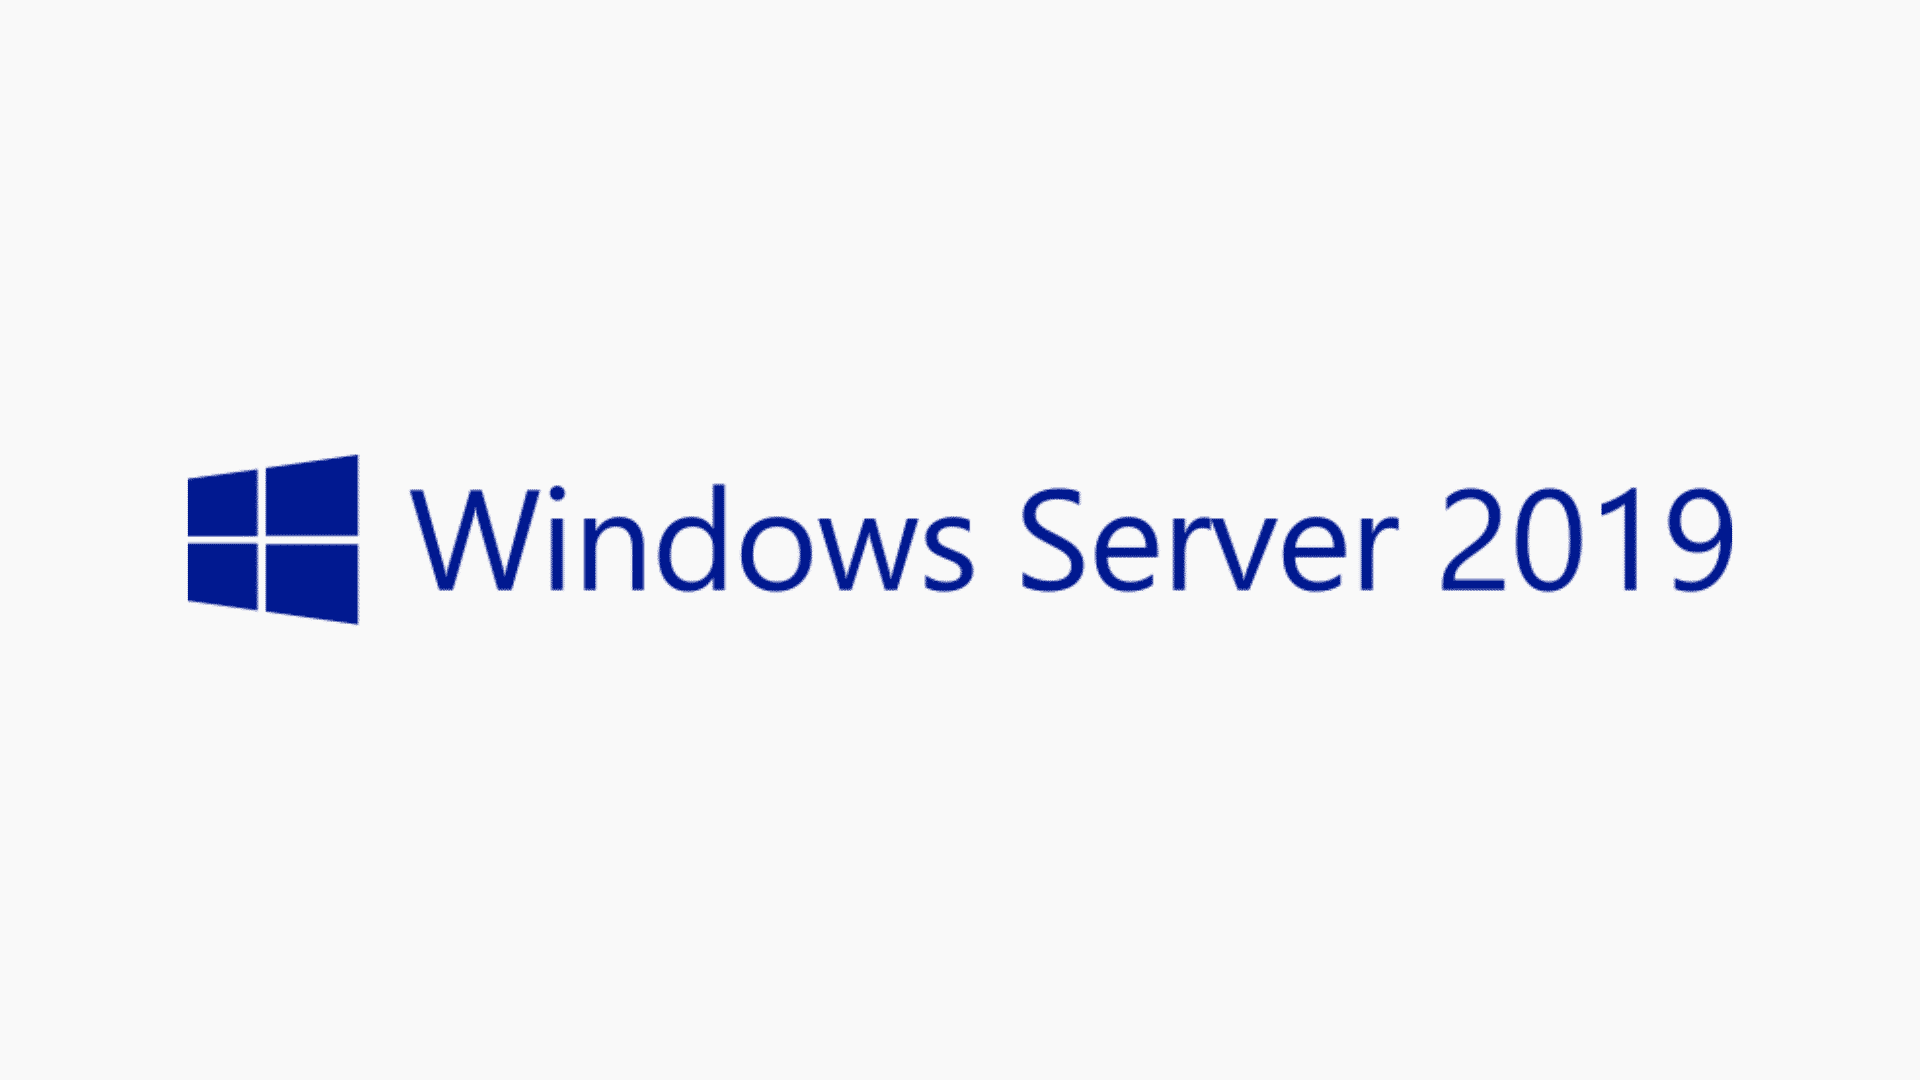 windows server 2019 logo, windows server 2019 yüksek çözünürlüklü logo